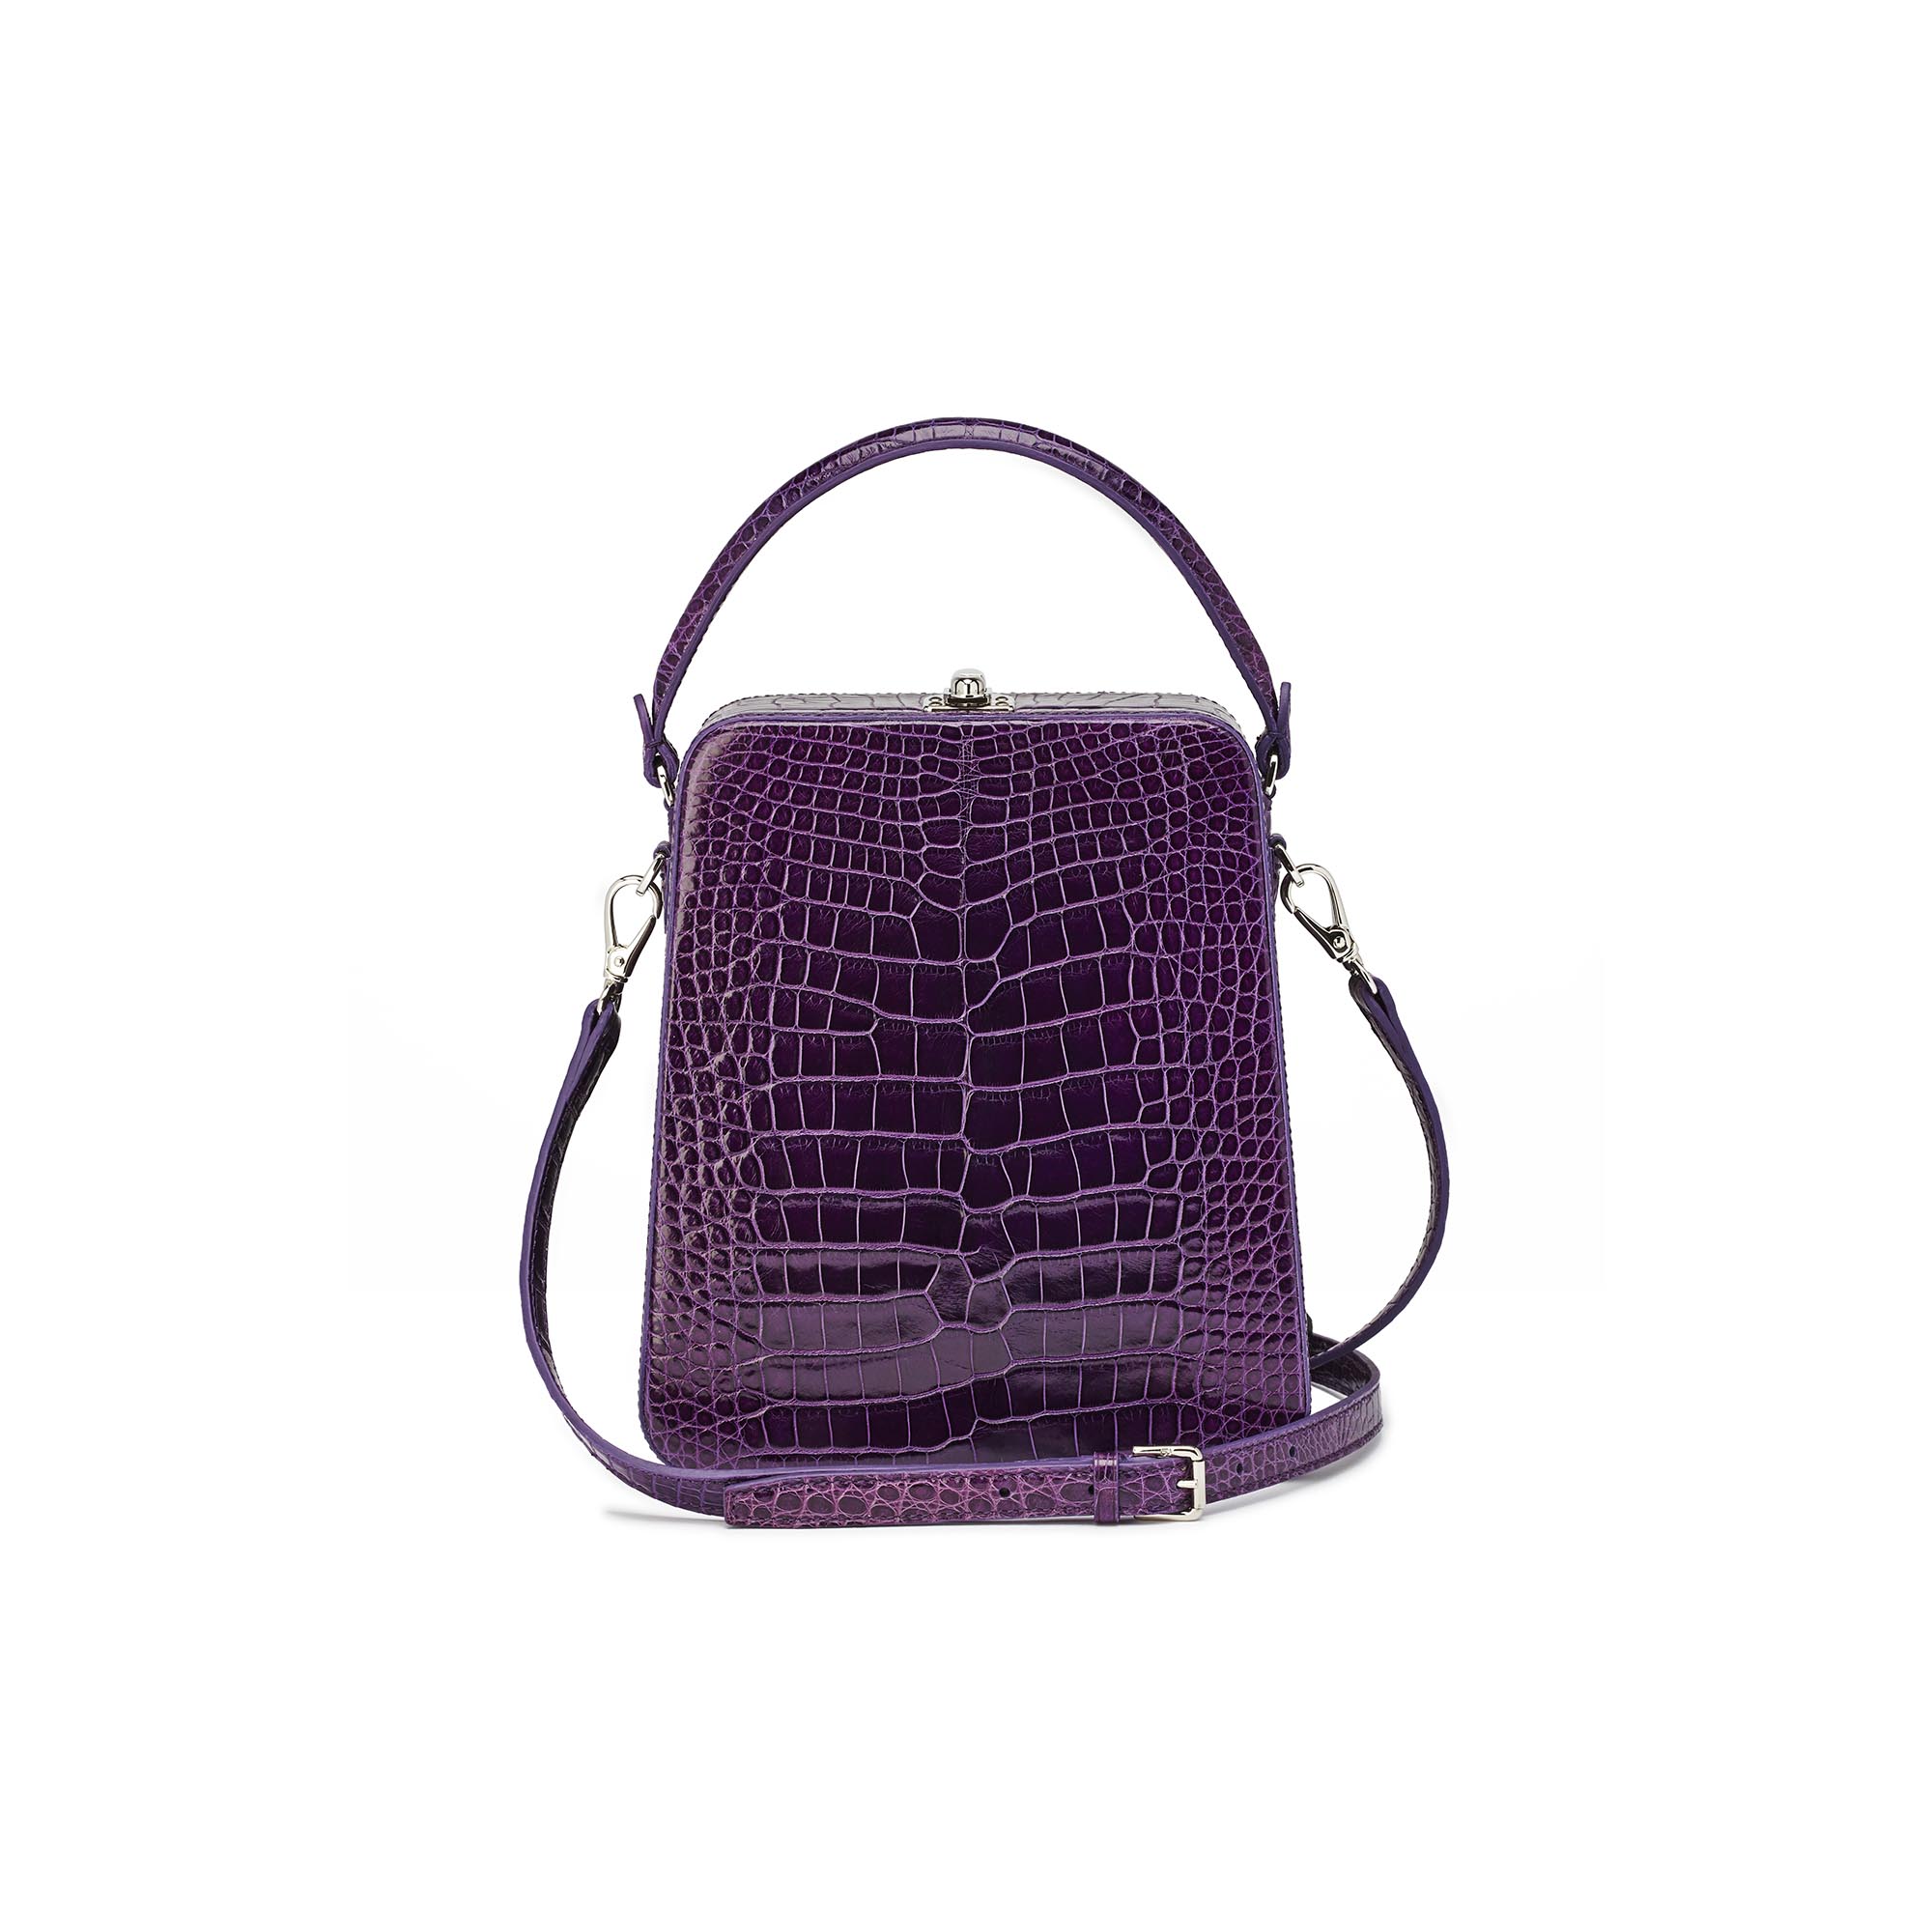 Tall-Bertoncina-purple-alligator-bag-Bertoni-1949